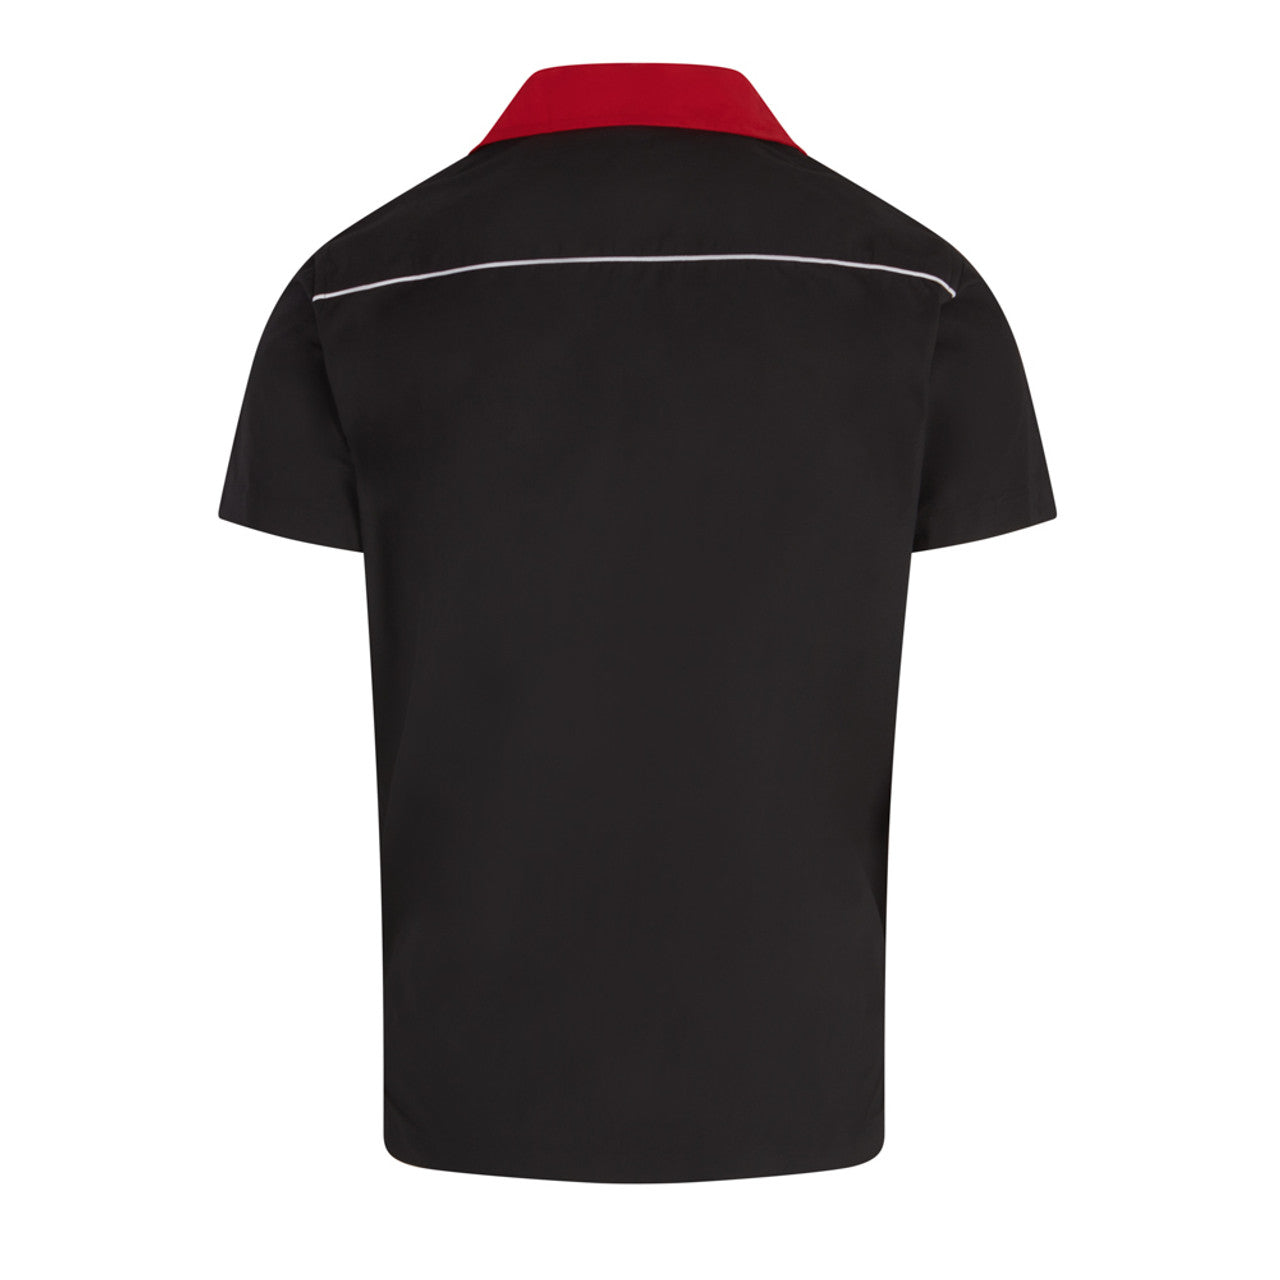 Relco Rockabilly Retro Red/Black Bowling Shirt